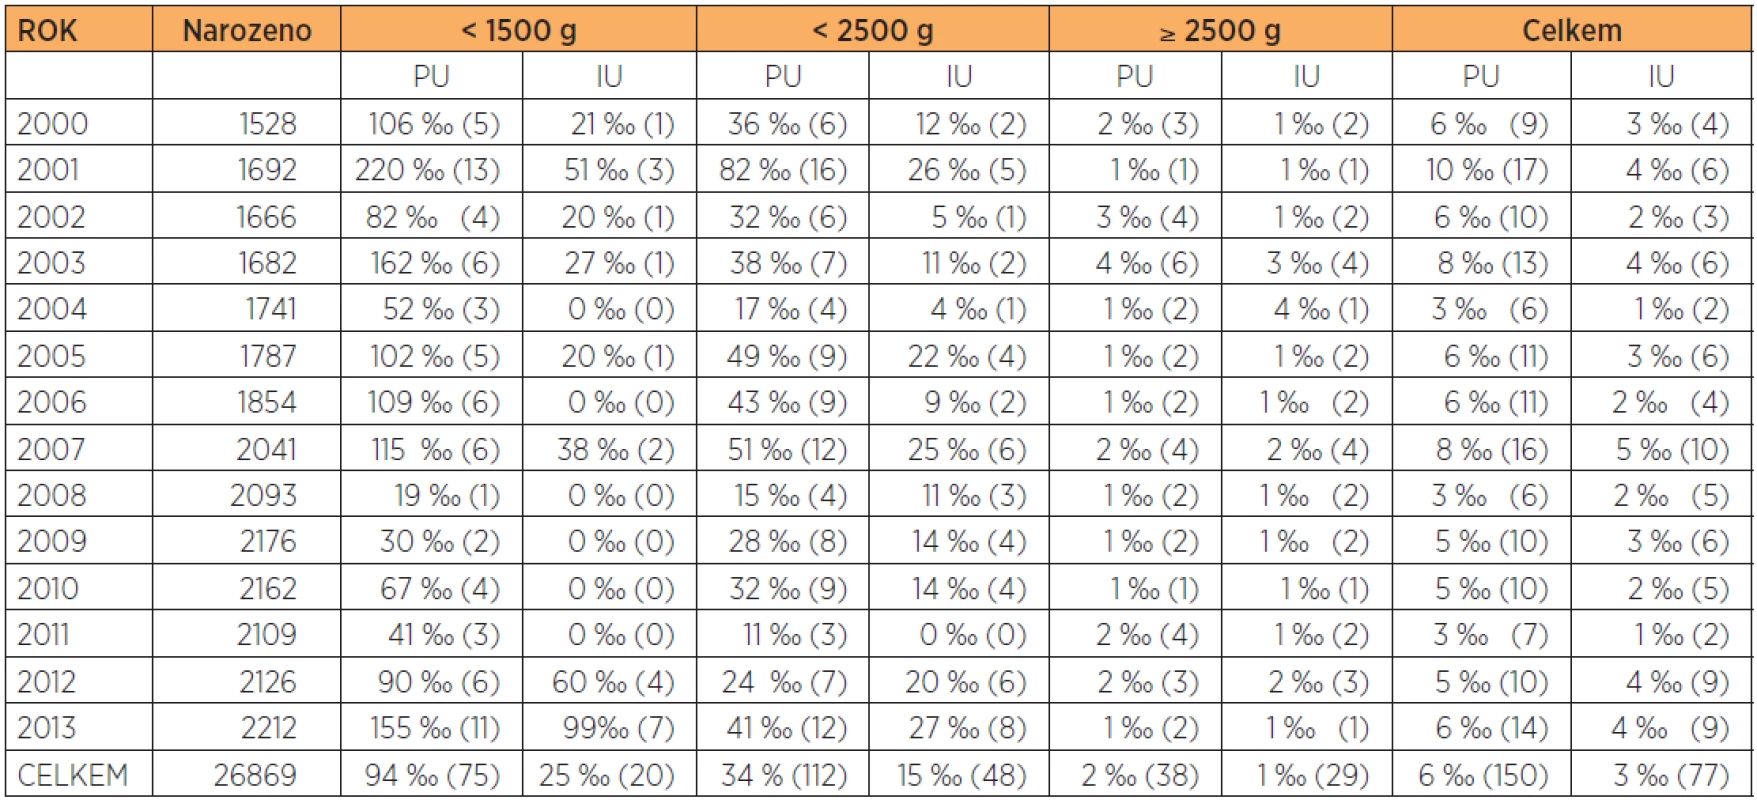 Perinatologické výsledky 2000-2013 (počty narozených, perinatální úmrtí PU, mrtvorozenost IU) (údaje v závorkách jsou absolutní hodnoty)